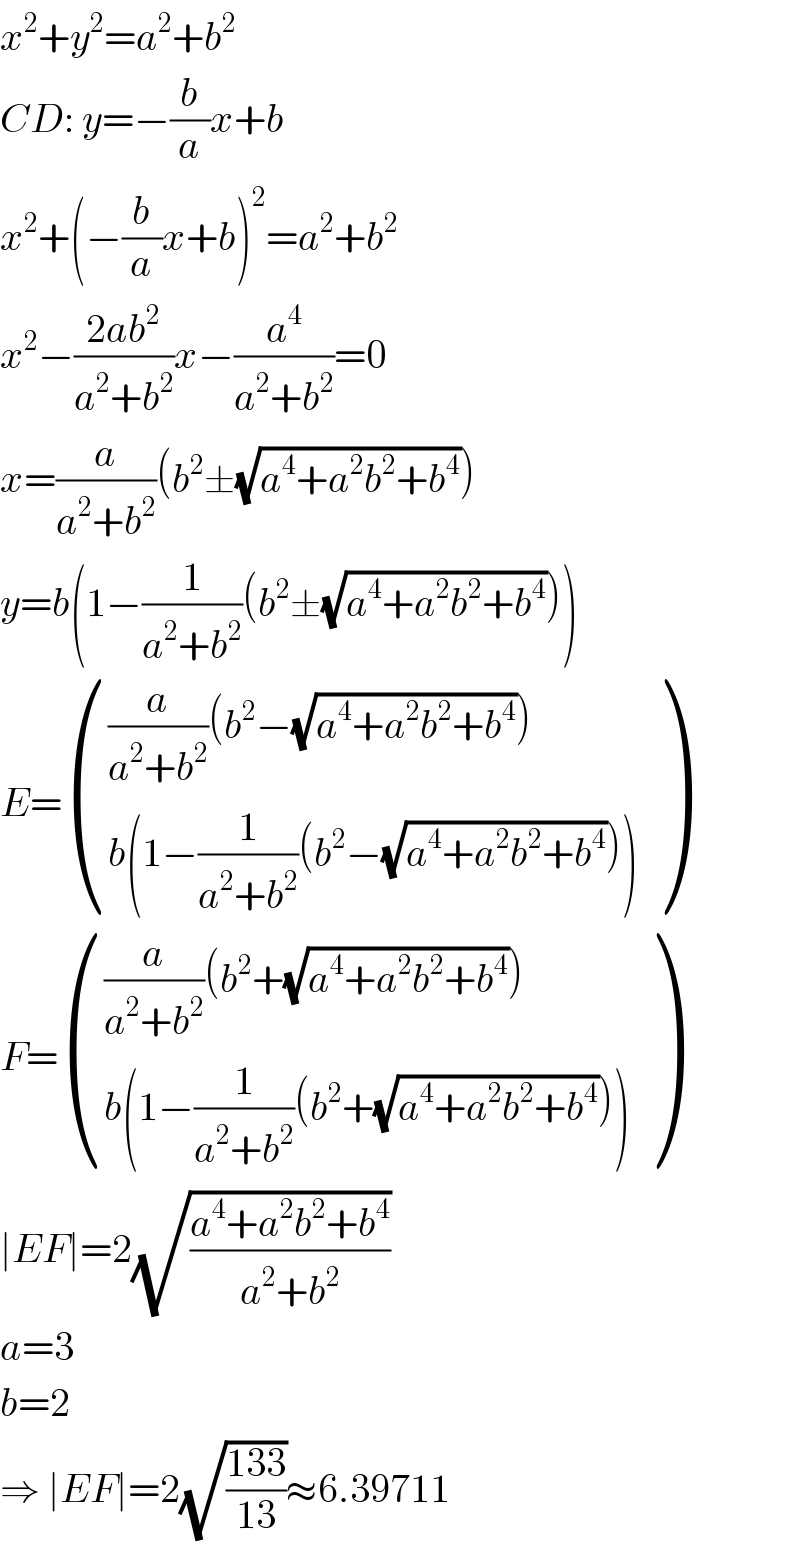 x^2 +y^2 =a^2 +b^2   CD: y=−(b/a)x+b  x^2 +(−(b/a)x+b)^2 =a^2 +b^2   x^2 −((2ab^2 )/(a^2 +b^2 ))x−(a^4 /(a^2 +b^2 ))=0  x=(a/(a^2 +b^2 ))(b^2 ±(√(a^4 +a^2 b^2 +b^4 )))  y=b(1−(1/(a^2 +b^2 ))(b^2 ±(√(a^4 +a^2 b^2 +b^4 ))))  E= ((((a/(a^2 +b^2 ))(b^2 −(√(a^4 +a^2 b^2 +b^4 ))))),((b(1−(1/(a^2 +b^2 ))(b^2 −(√(a^4 +a^2 b^2 +b^4 )))))) )  F= ((((a/(a^2 +b^2 ))(b^2 +(√(a^4 +a^2 b^2 +b^4 ))))),((b(1−(1/(a^2 +b^2 ))(b^2 +(√(a^4 +a^2 b^2 +b^4 )))))) )  ∣EF∣=2(√((a^4 +a^2 b^2 +b^4 )/(a^2 +b^2 )))  a=3  b=2  ⇒ ∣EF∣=2(√((133)/(13)))≈6.39711  